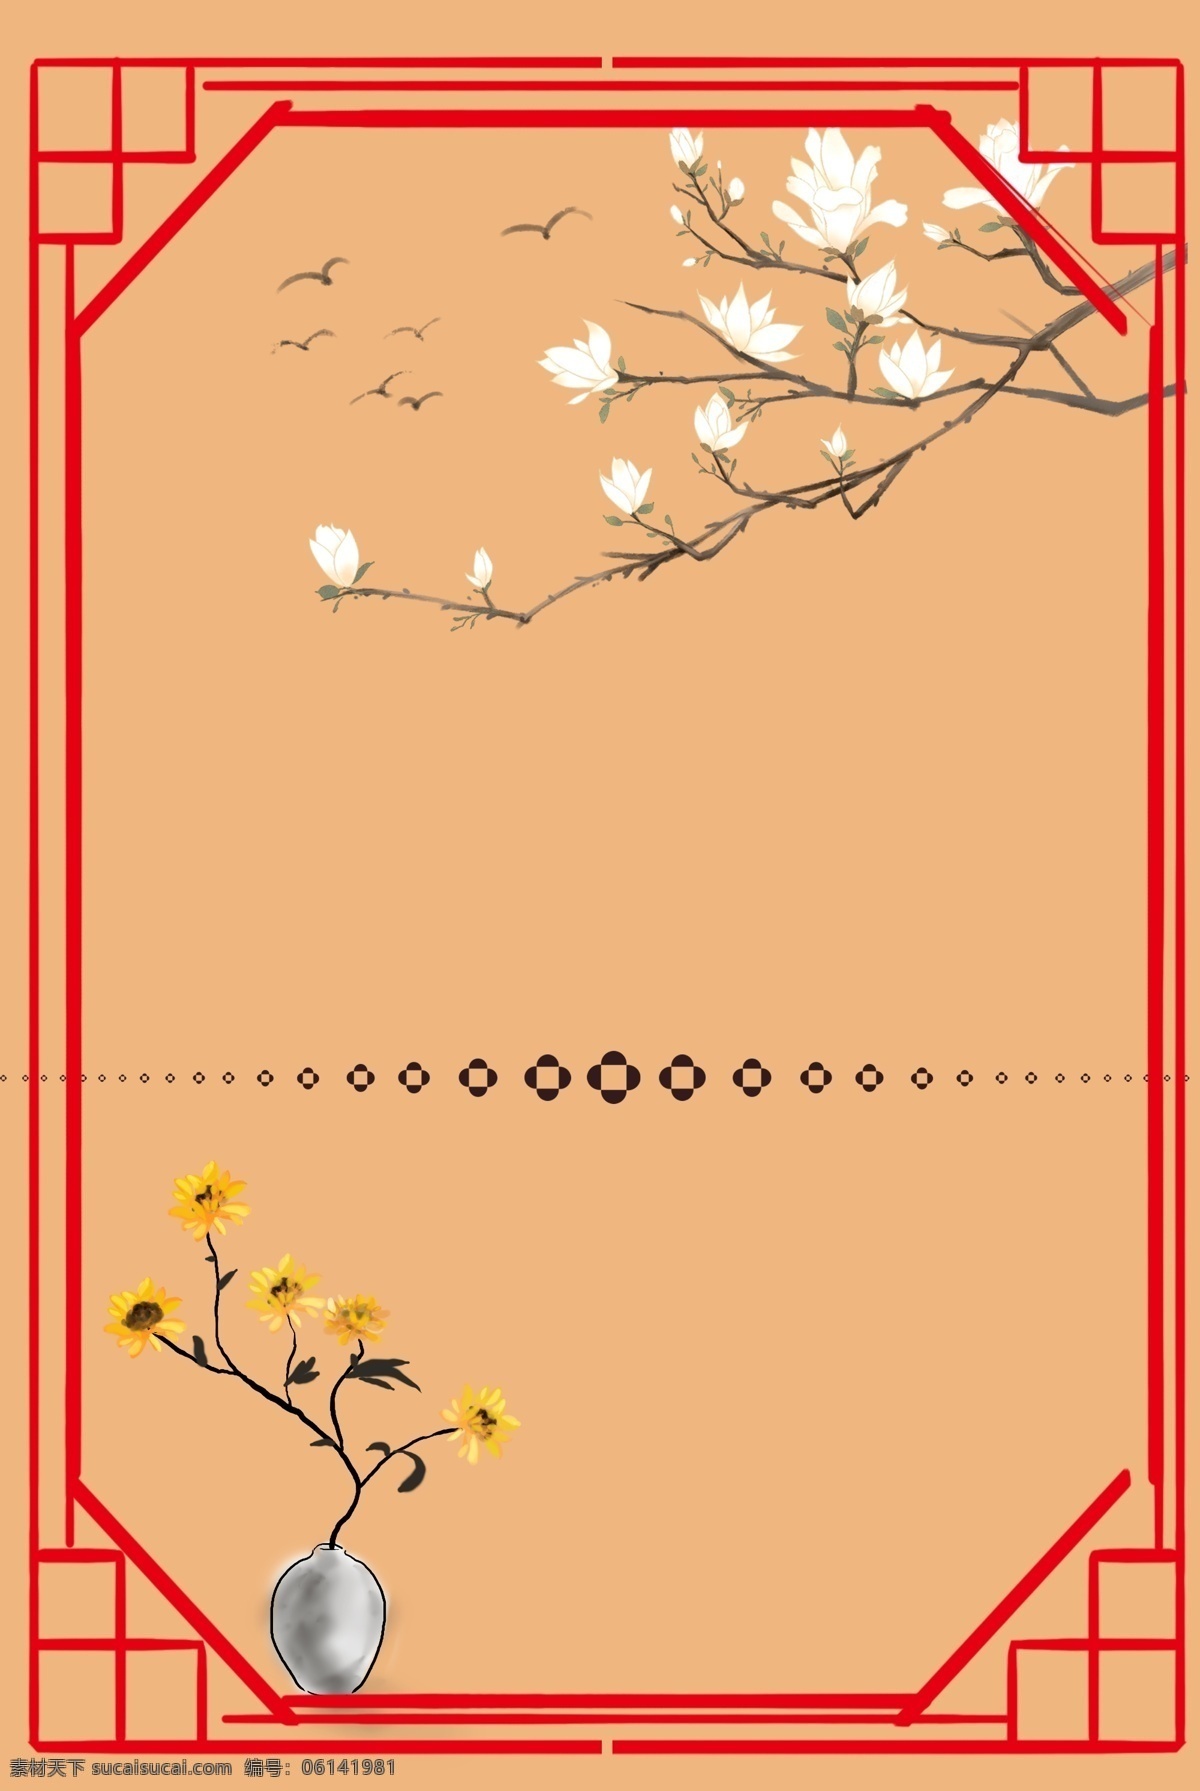 红色 中 国风 工笔画 海报 背景 图 中国风 背景图 素雅 兰花 植物 中国